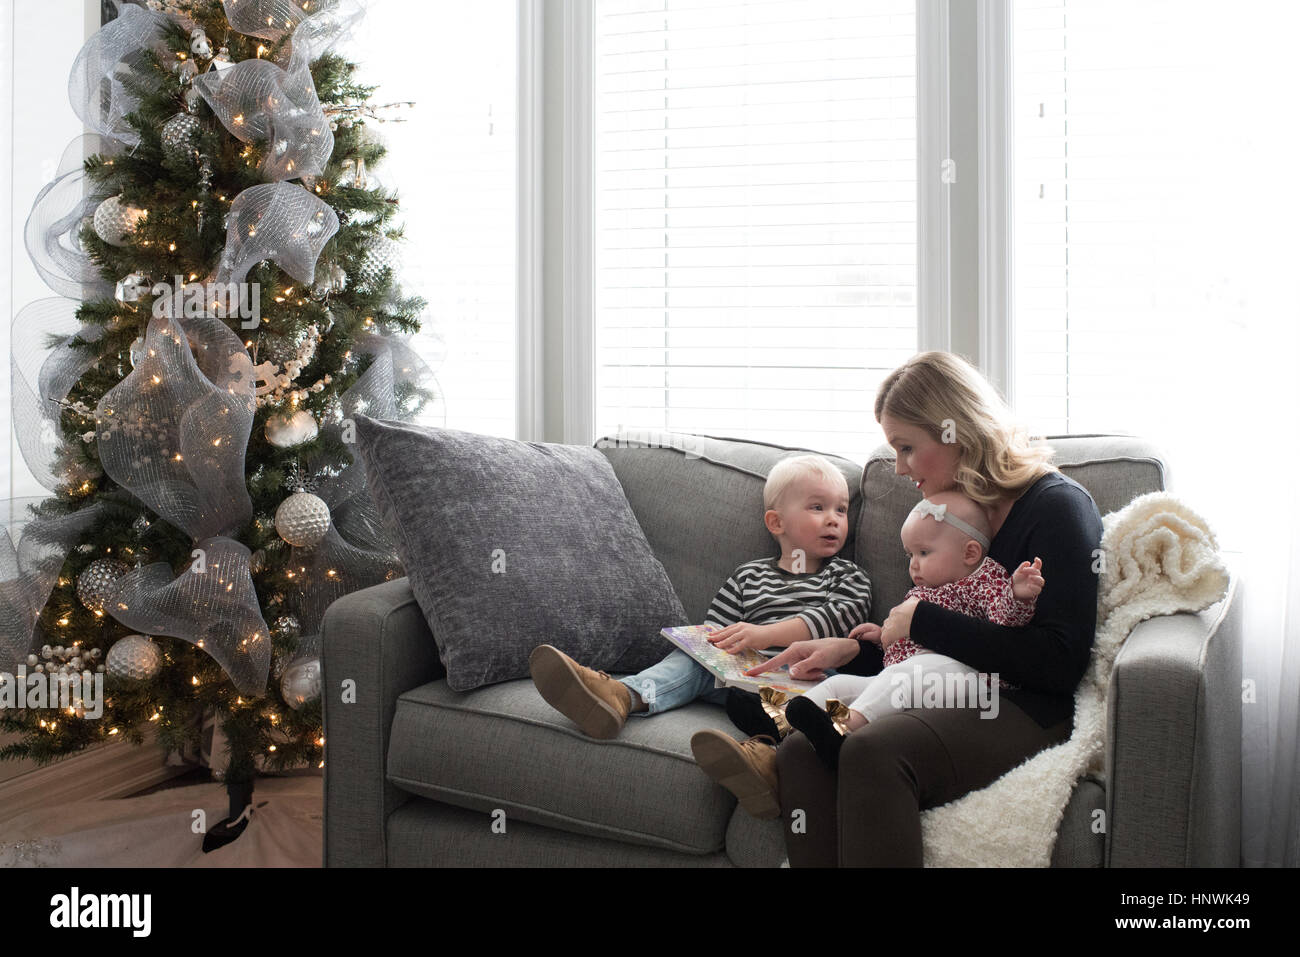 La mère et l'enfant assis sur un canapé, looking at book Banque D'Images